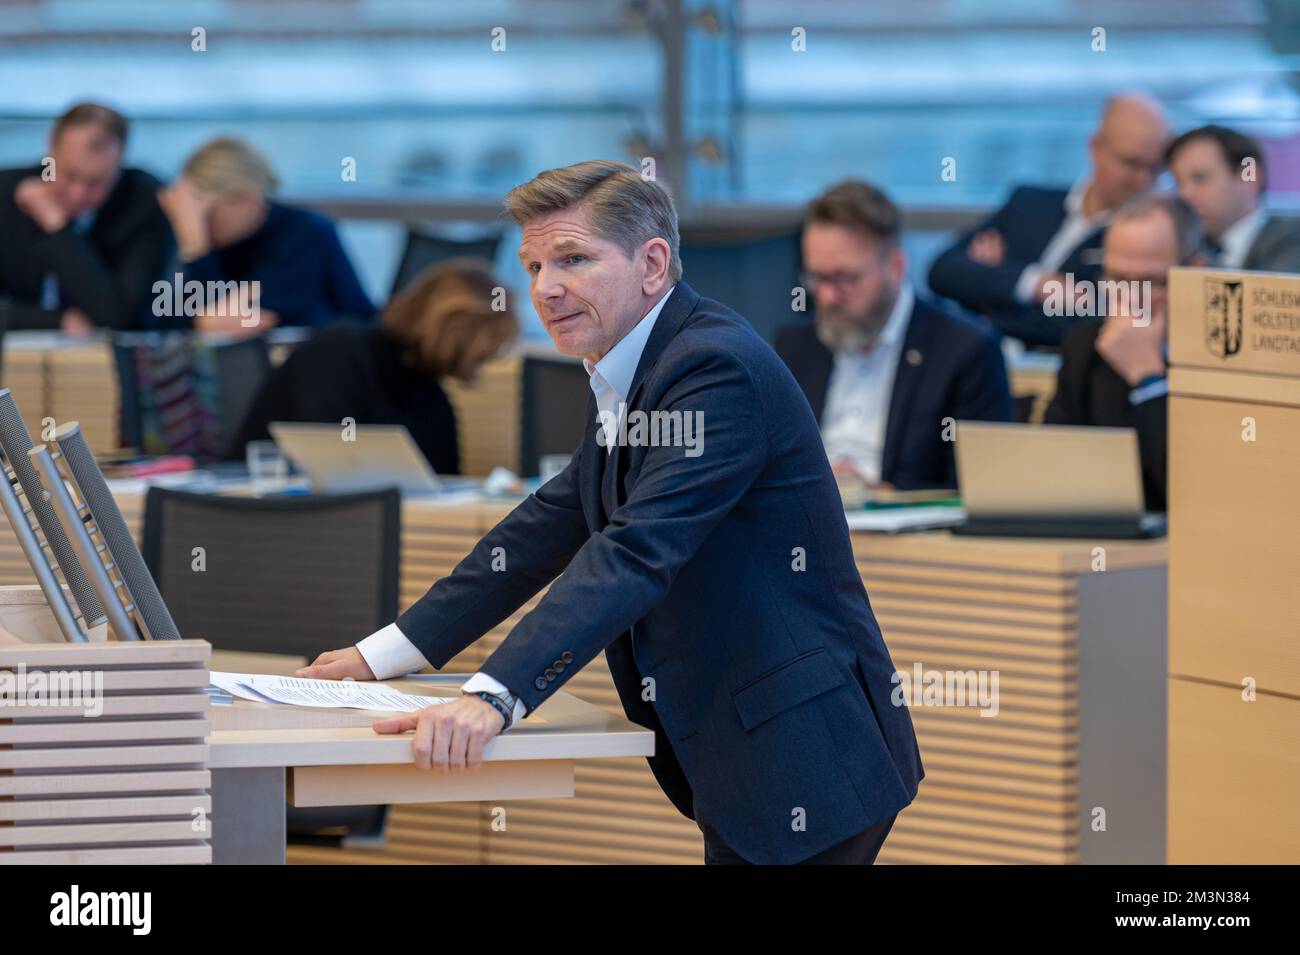 Plenarsitzung im Landeshaus Kiel der Abgeordnete Heiner Garg von der FDP bei seiner Rede vor dem Plenum Stock Photo